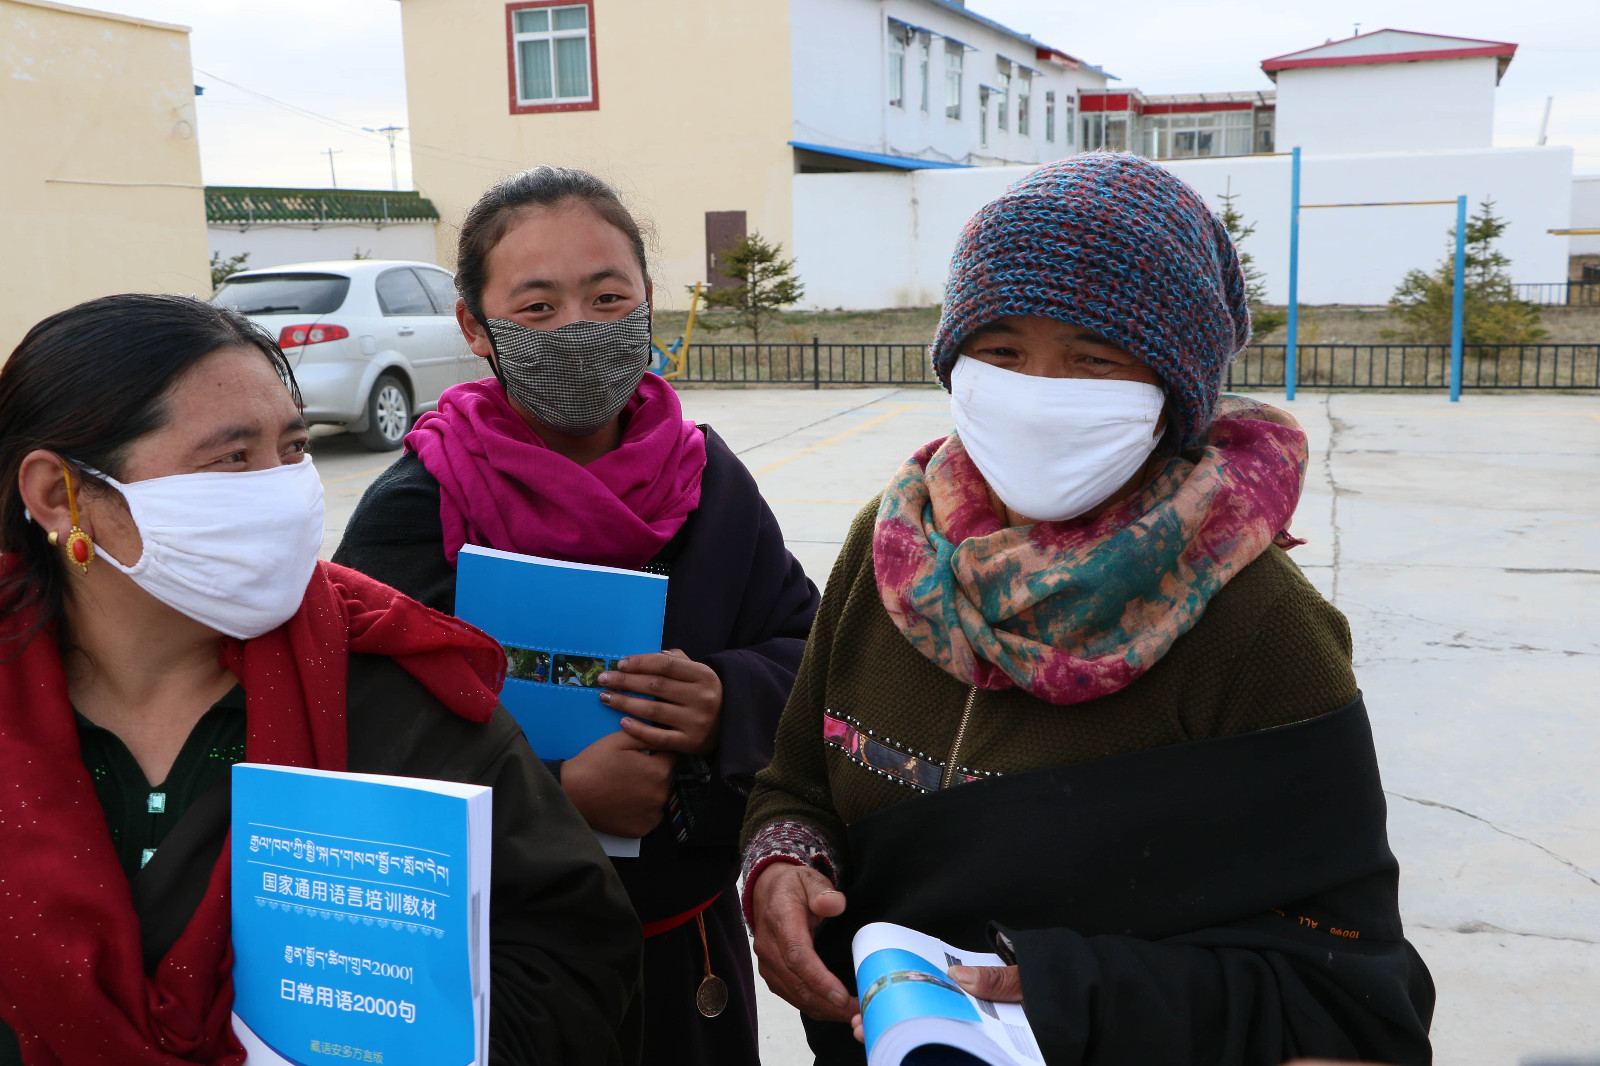 四川 国家通用语言培训 藏区的培训学员领到学习教材.jpg